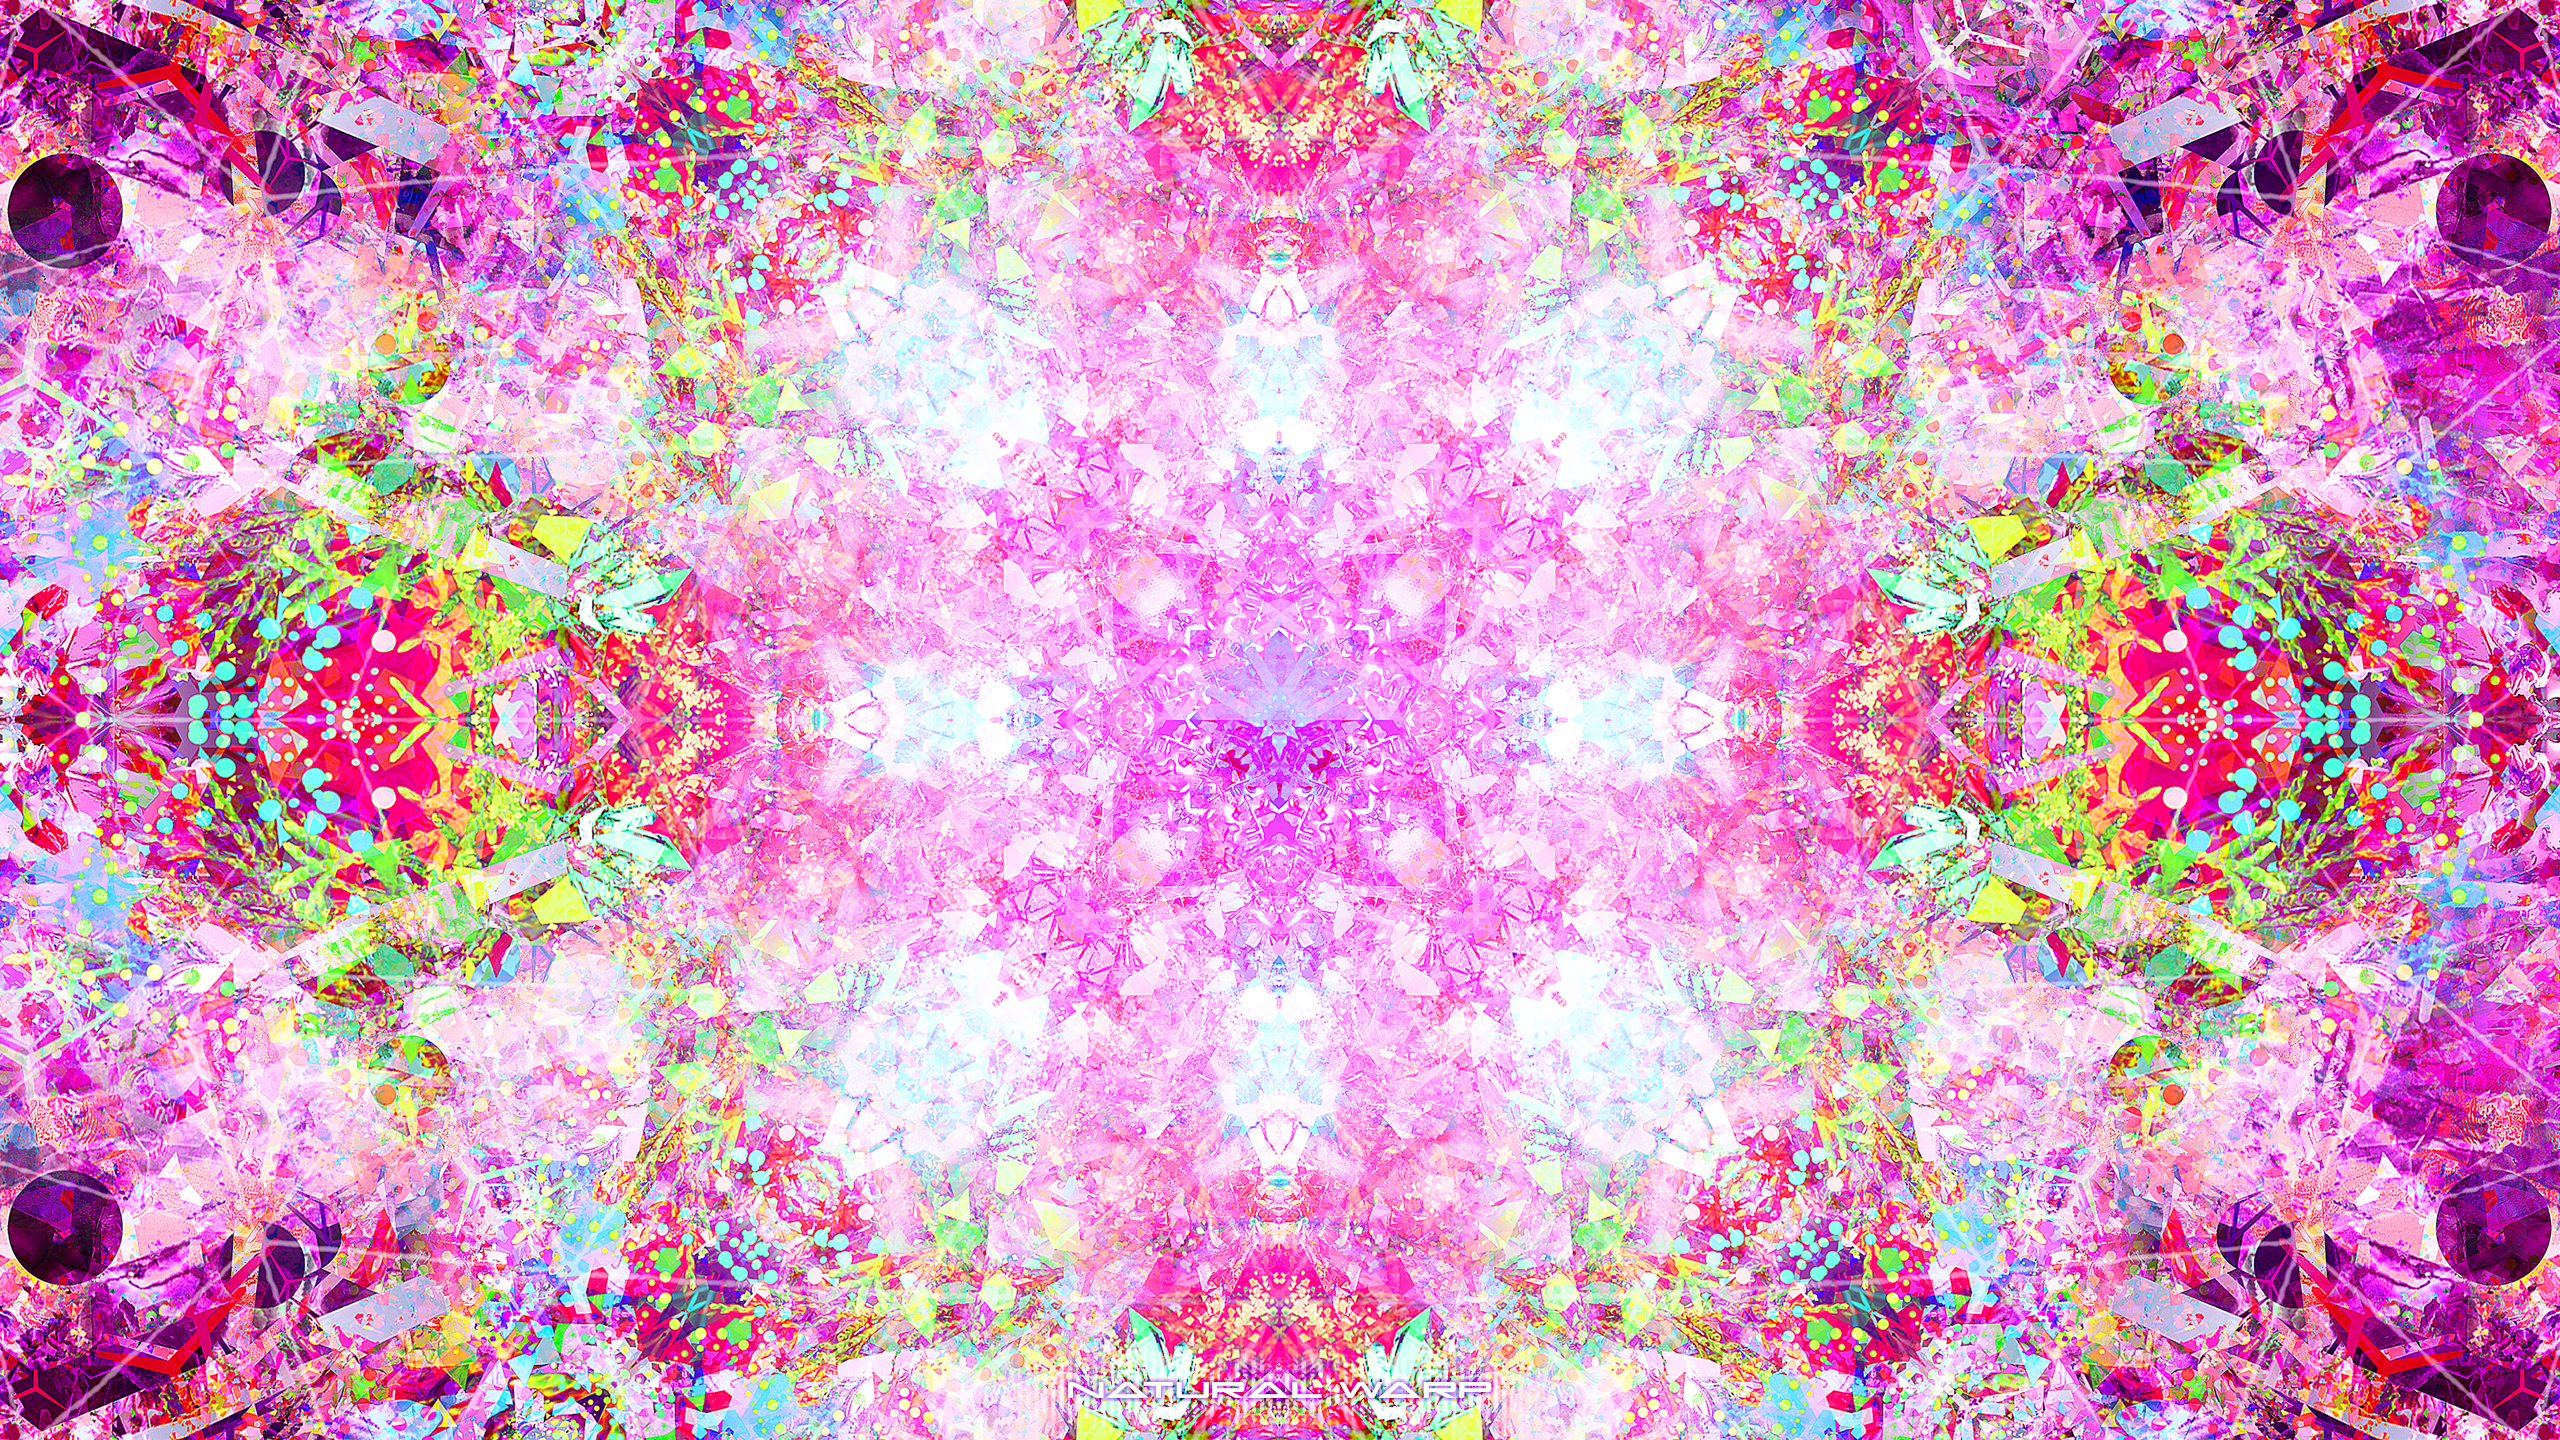 General 2560x1440 psychedelic digital art fractal pink